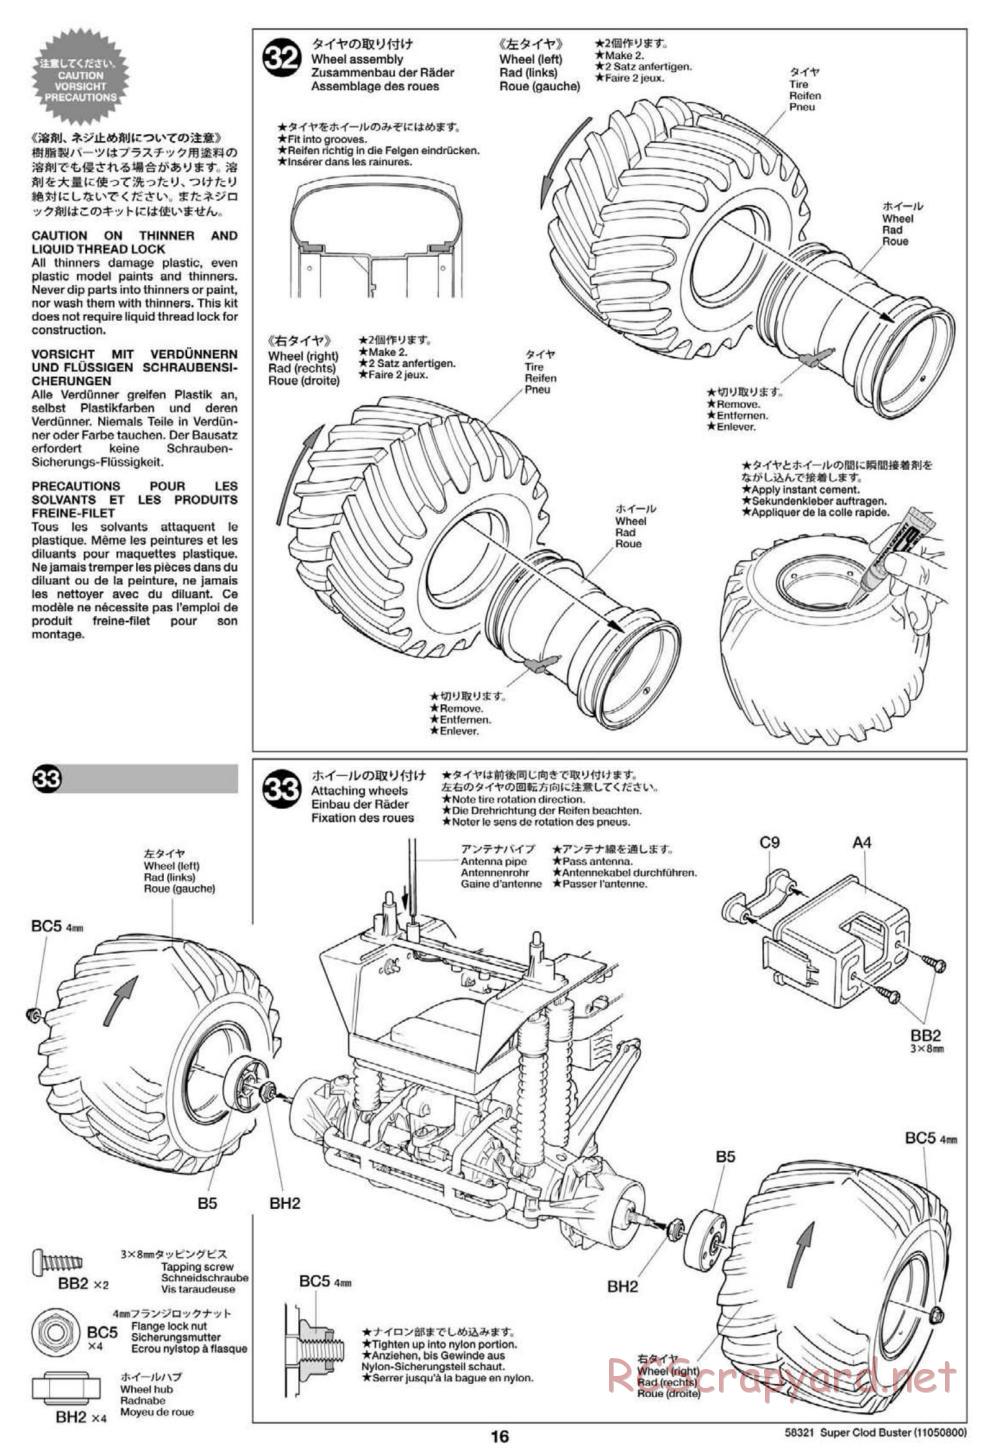 Tamiya - Super Clod Buster Chassis - Manual - Page 16